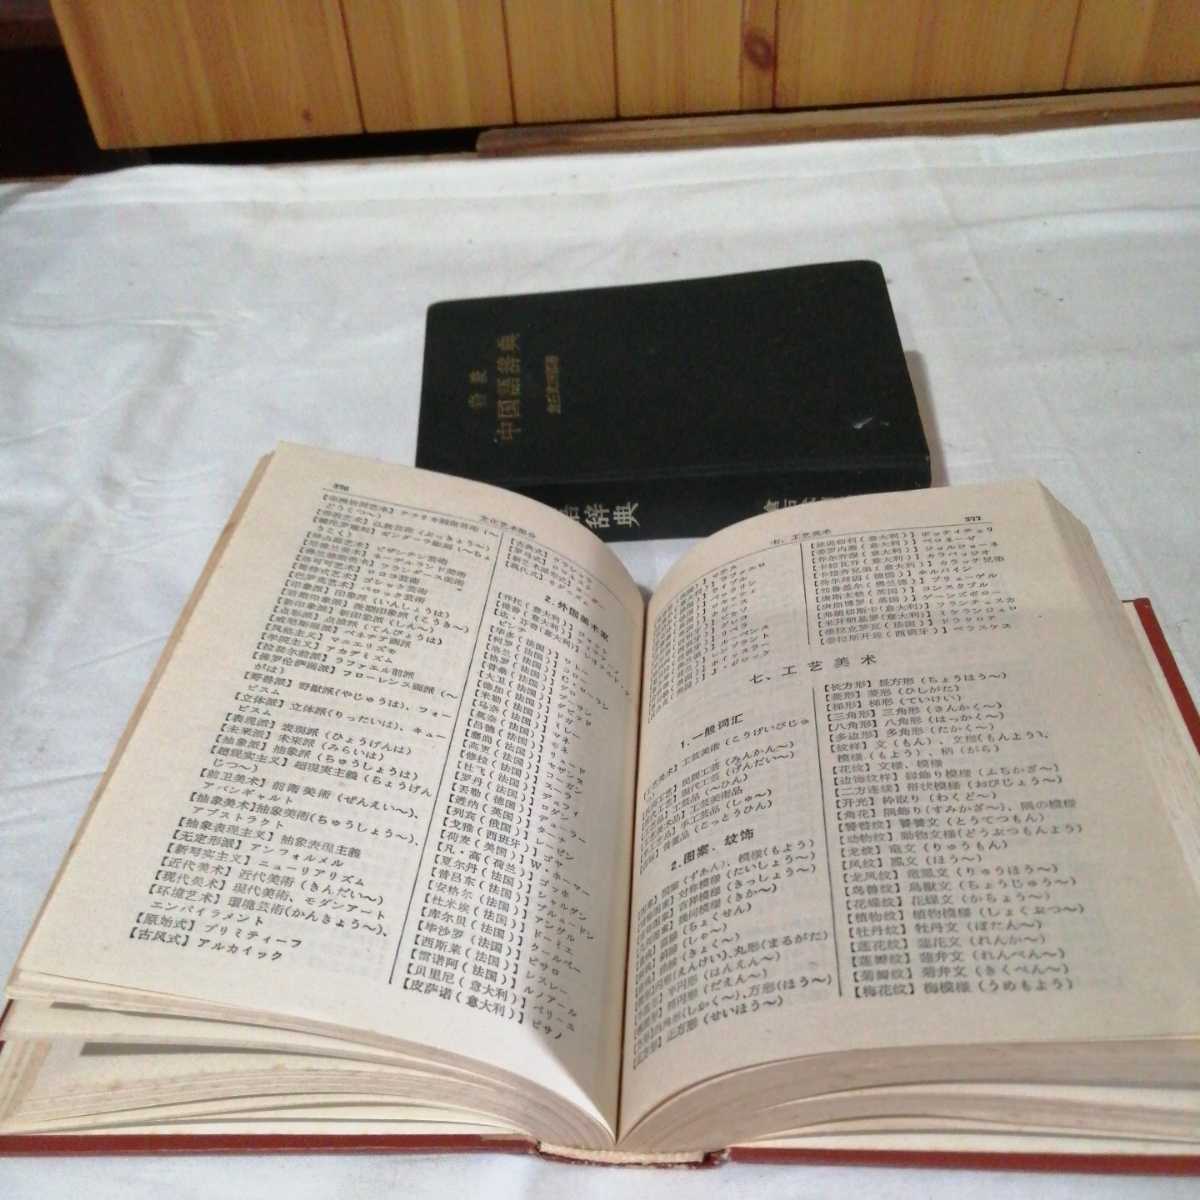  итого 2 шт. комплект Iwanami средний словарь государственного языка 1974 / день средний классификация .. вне документ выпускать фирма выпускать 1991 стоимость доставки 520 иен др. 